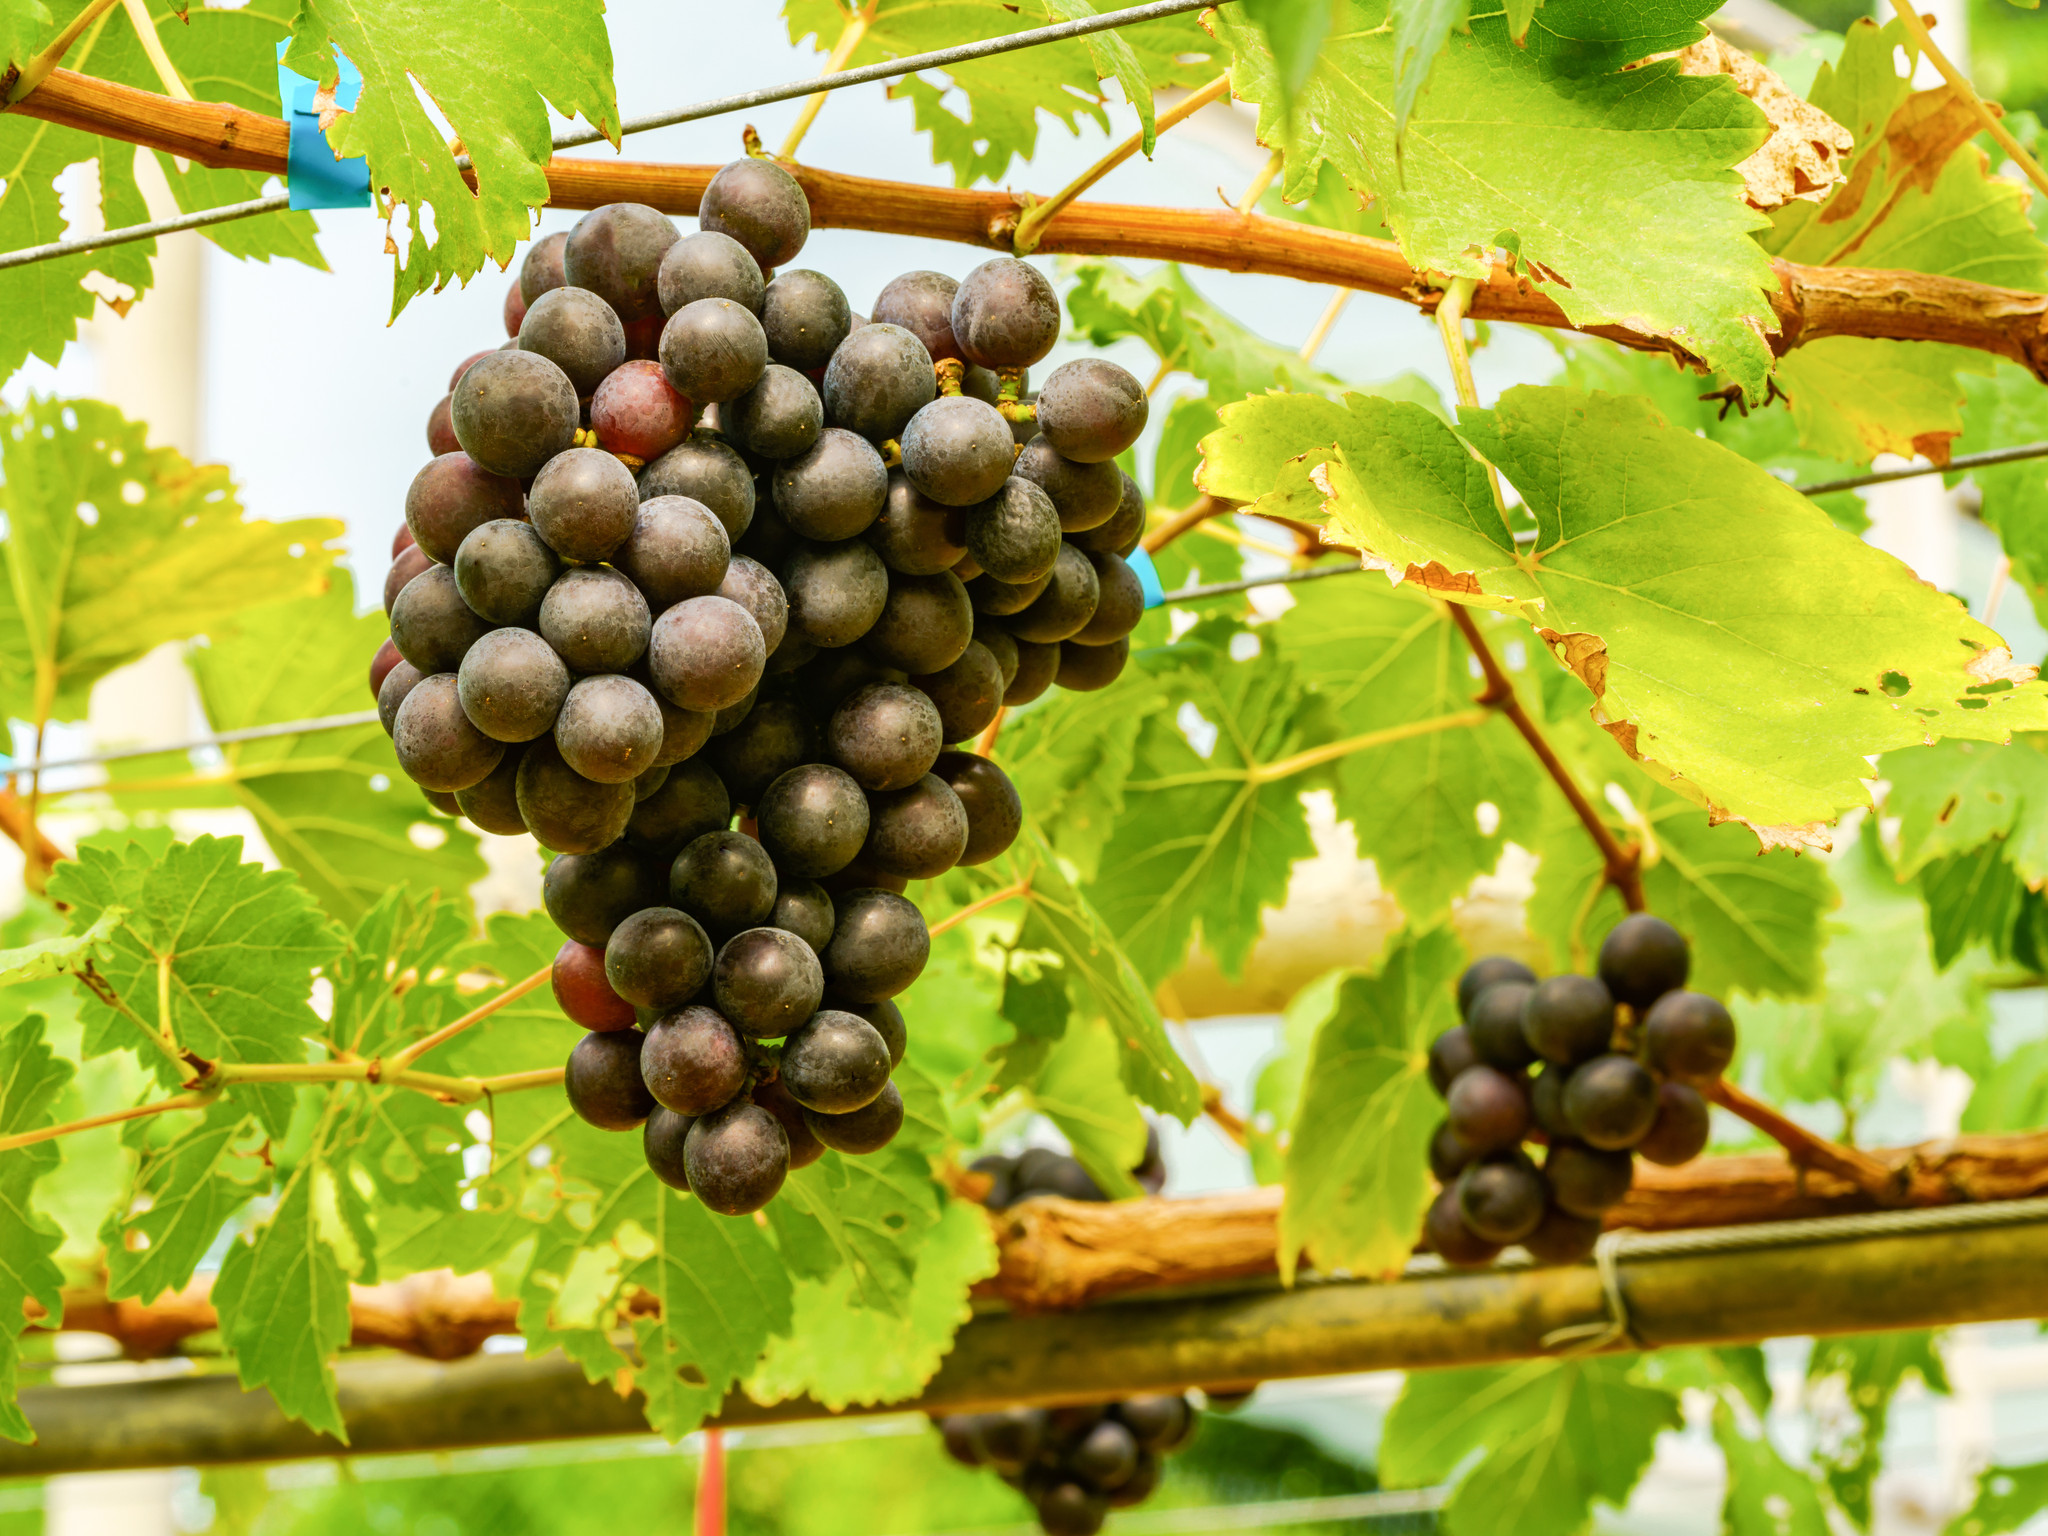 Victoria Red Grape Vines For Sale